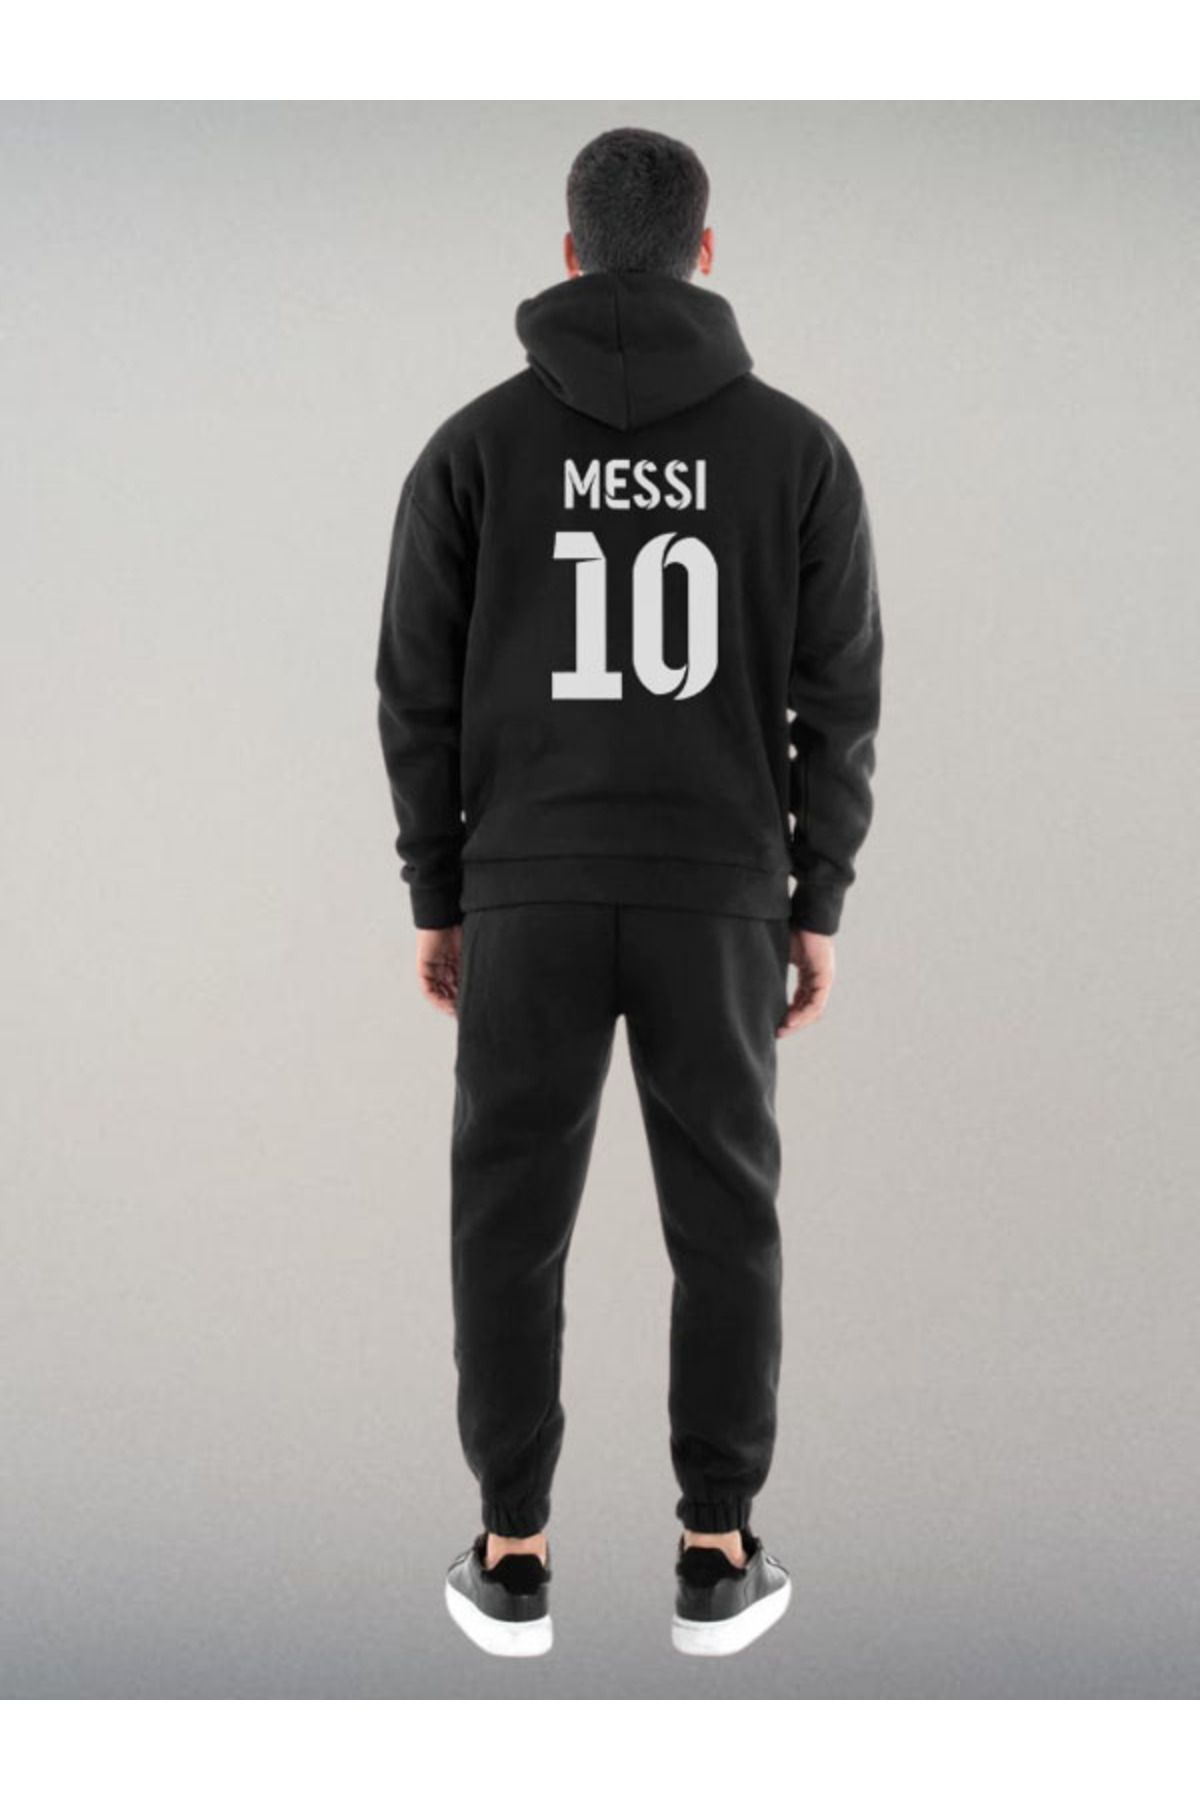 Darkia Lionel Messi Özel Tasarım Baskılı Kapşonlu Sweatshirt Hoodie Spor Eşofman Takımı